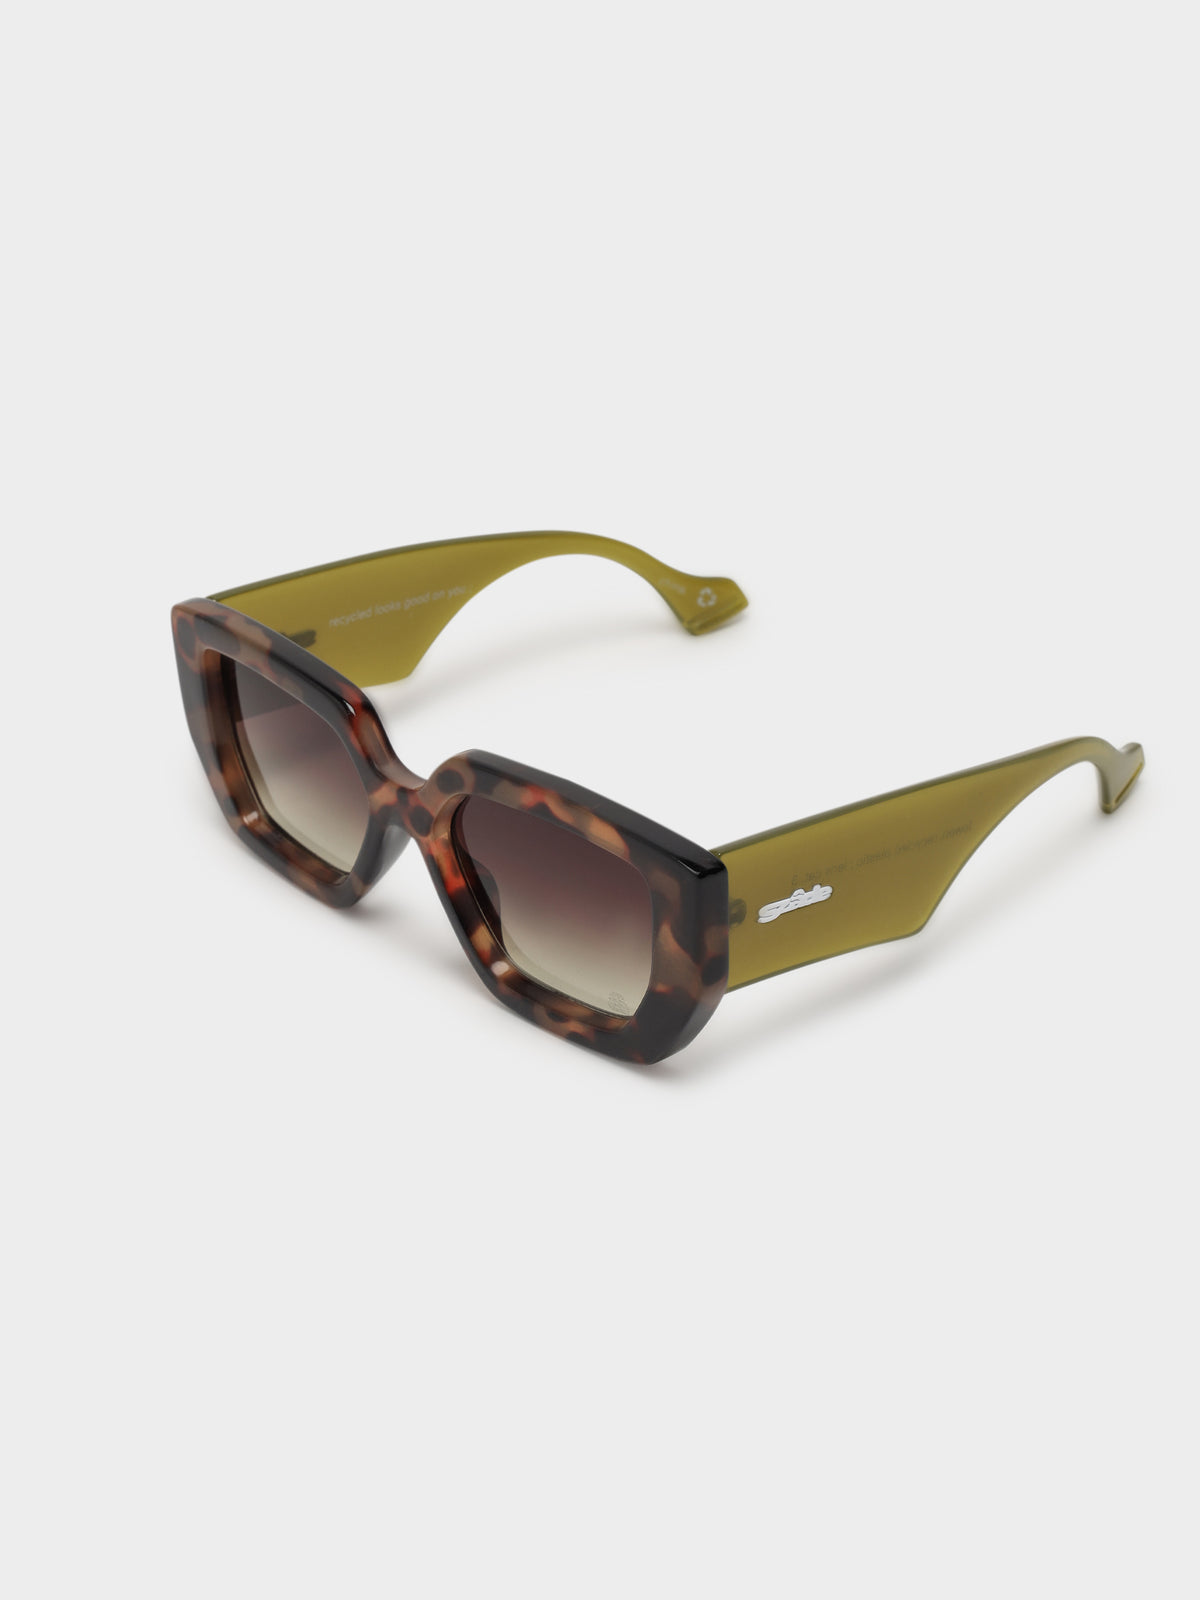 Lowen Sunglasses in Pinta Tortoise